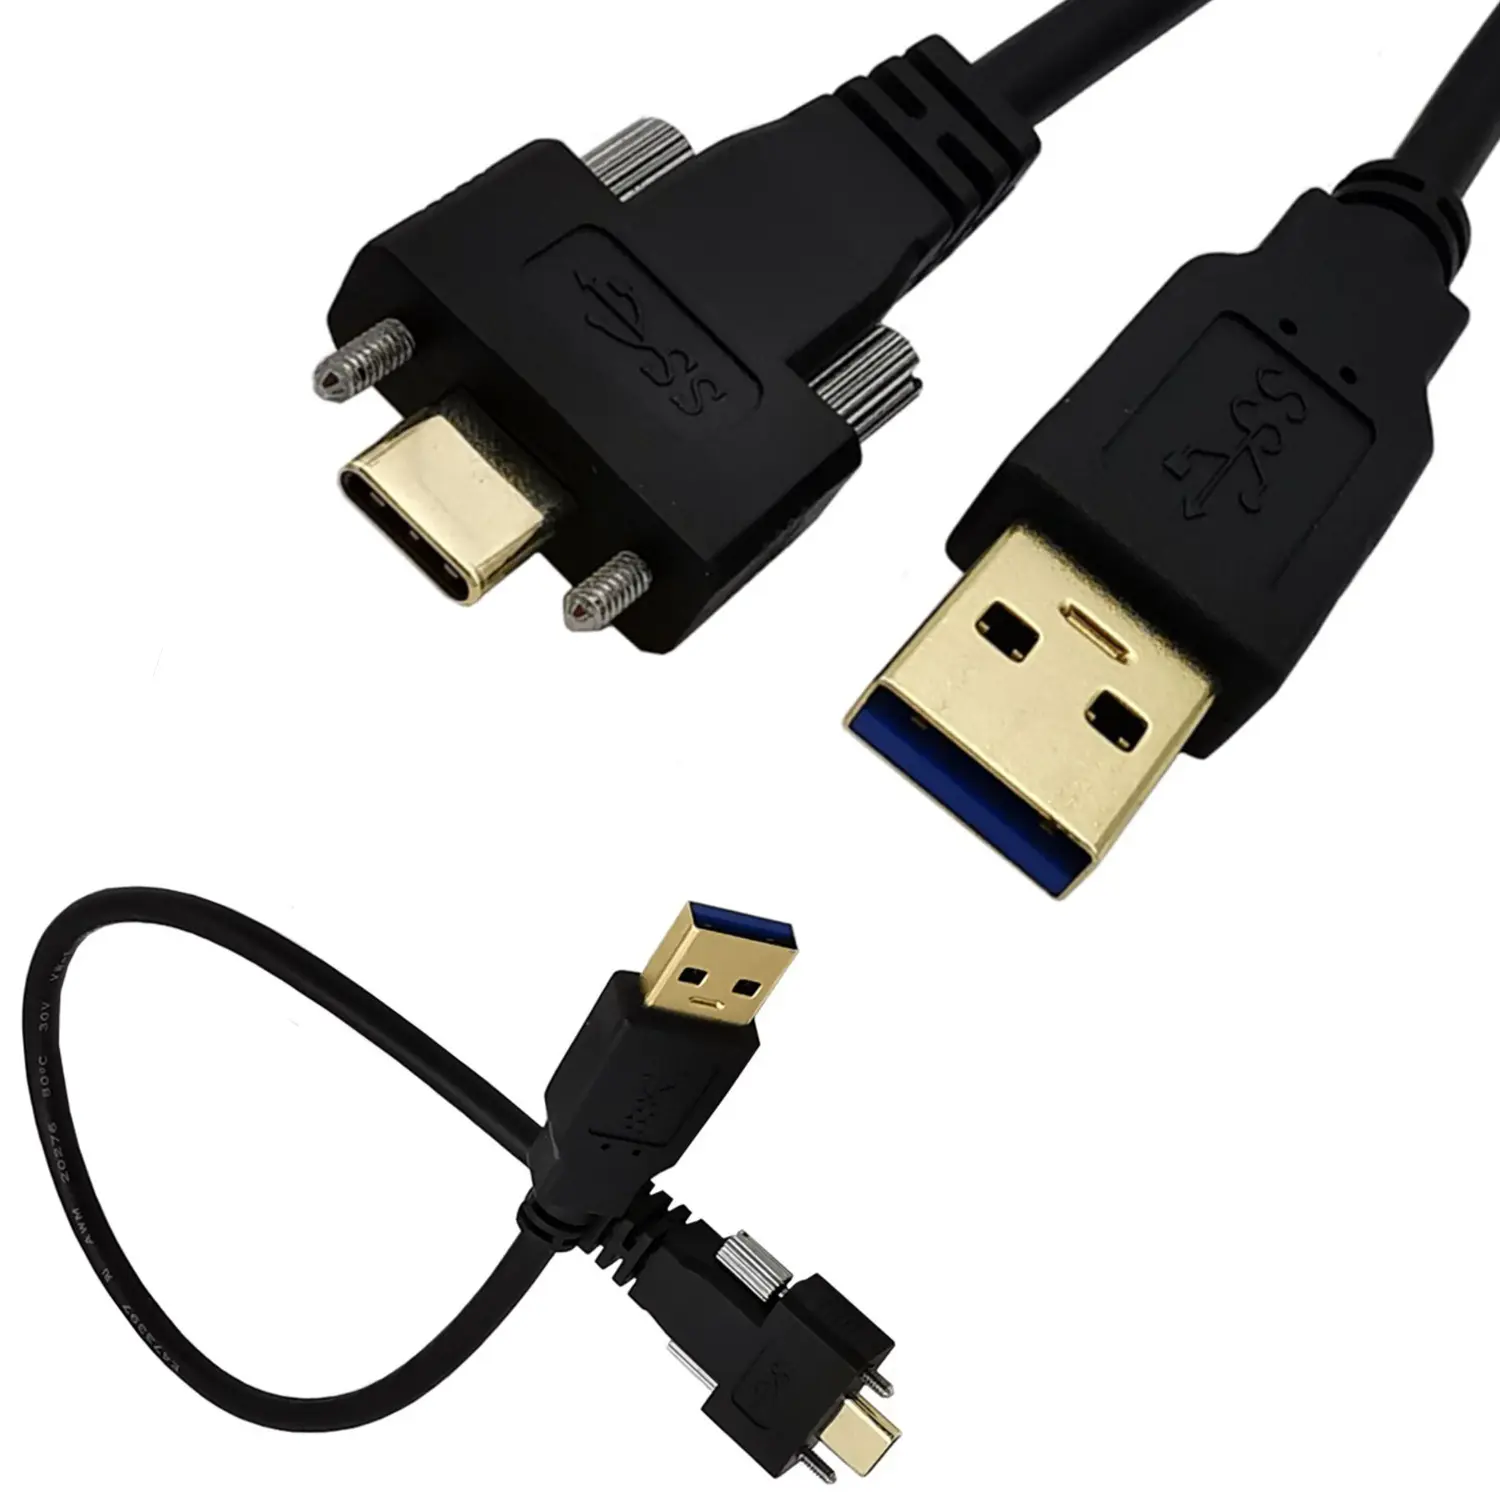 カスタム高速電源USB3.0から直角90度の角度U字型USBタイプCオス充電データケーブル (ネジロック付き)